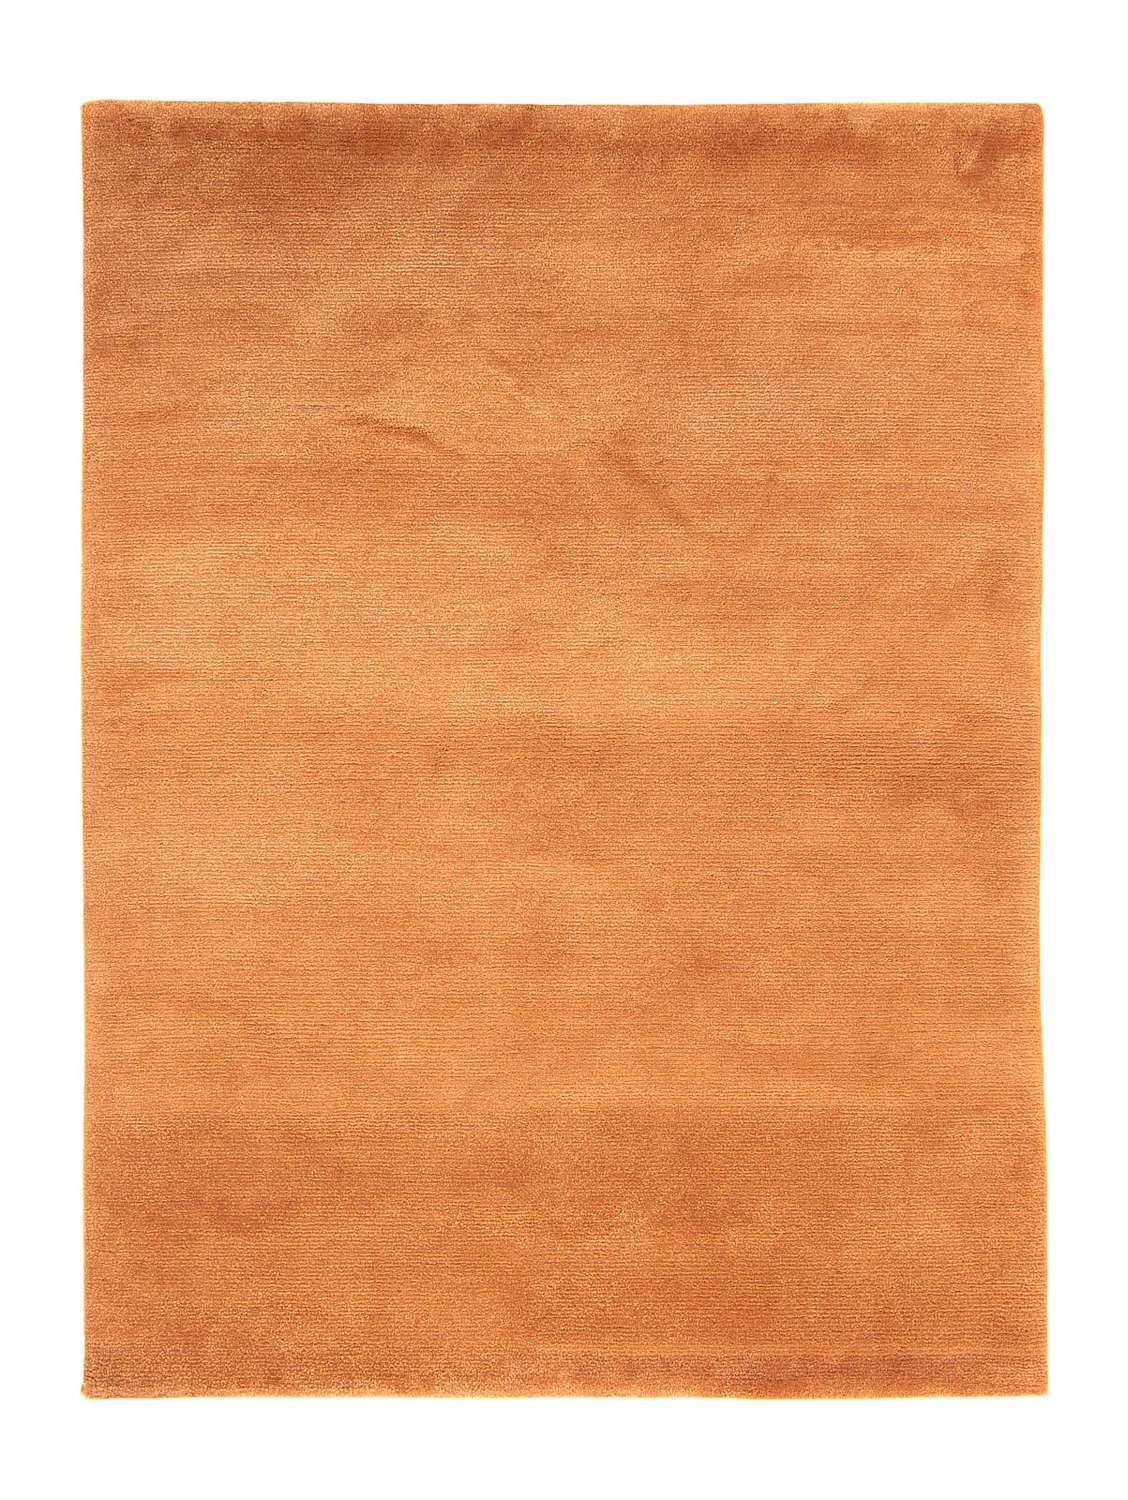 Nepal Rug - 193 x 142 cm - brown